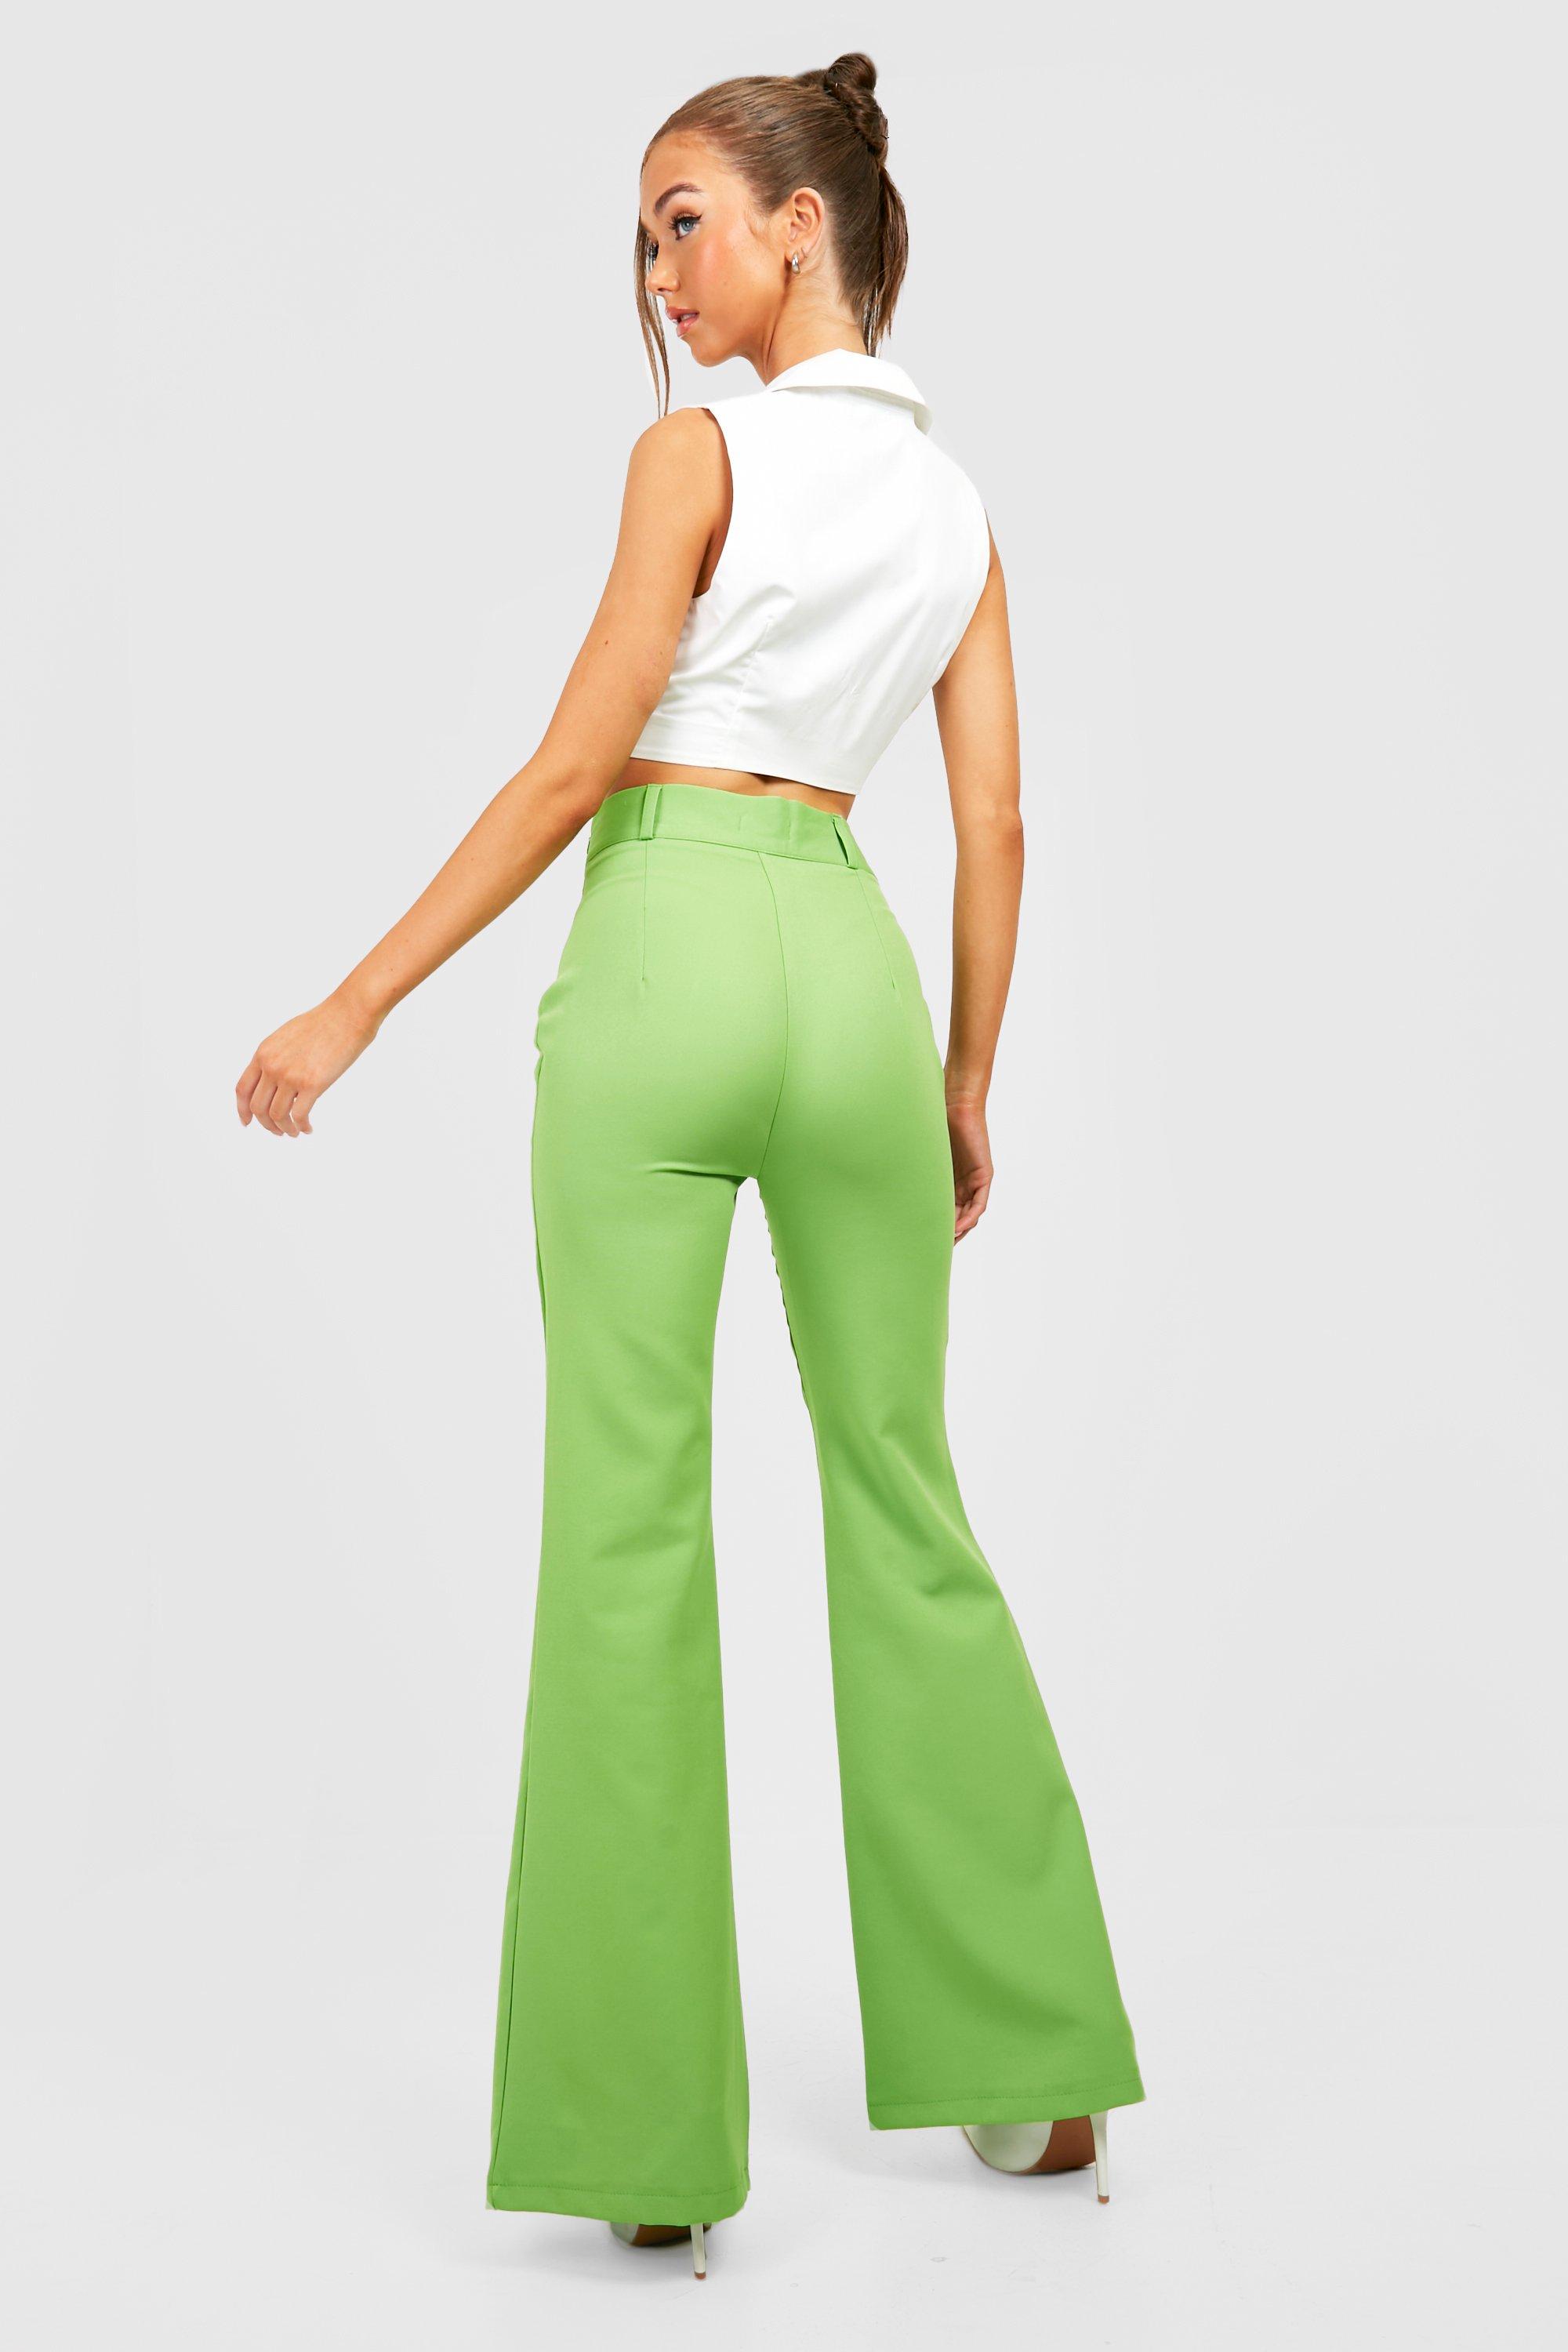 https://media.boohoo.com/i/boohoo/gzz28144_green_xl_1/female-green-high-waisted-flared-work-pants